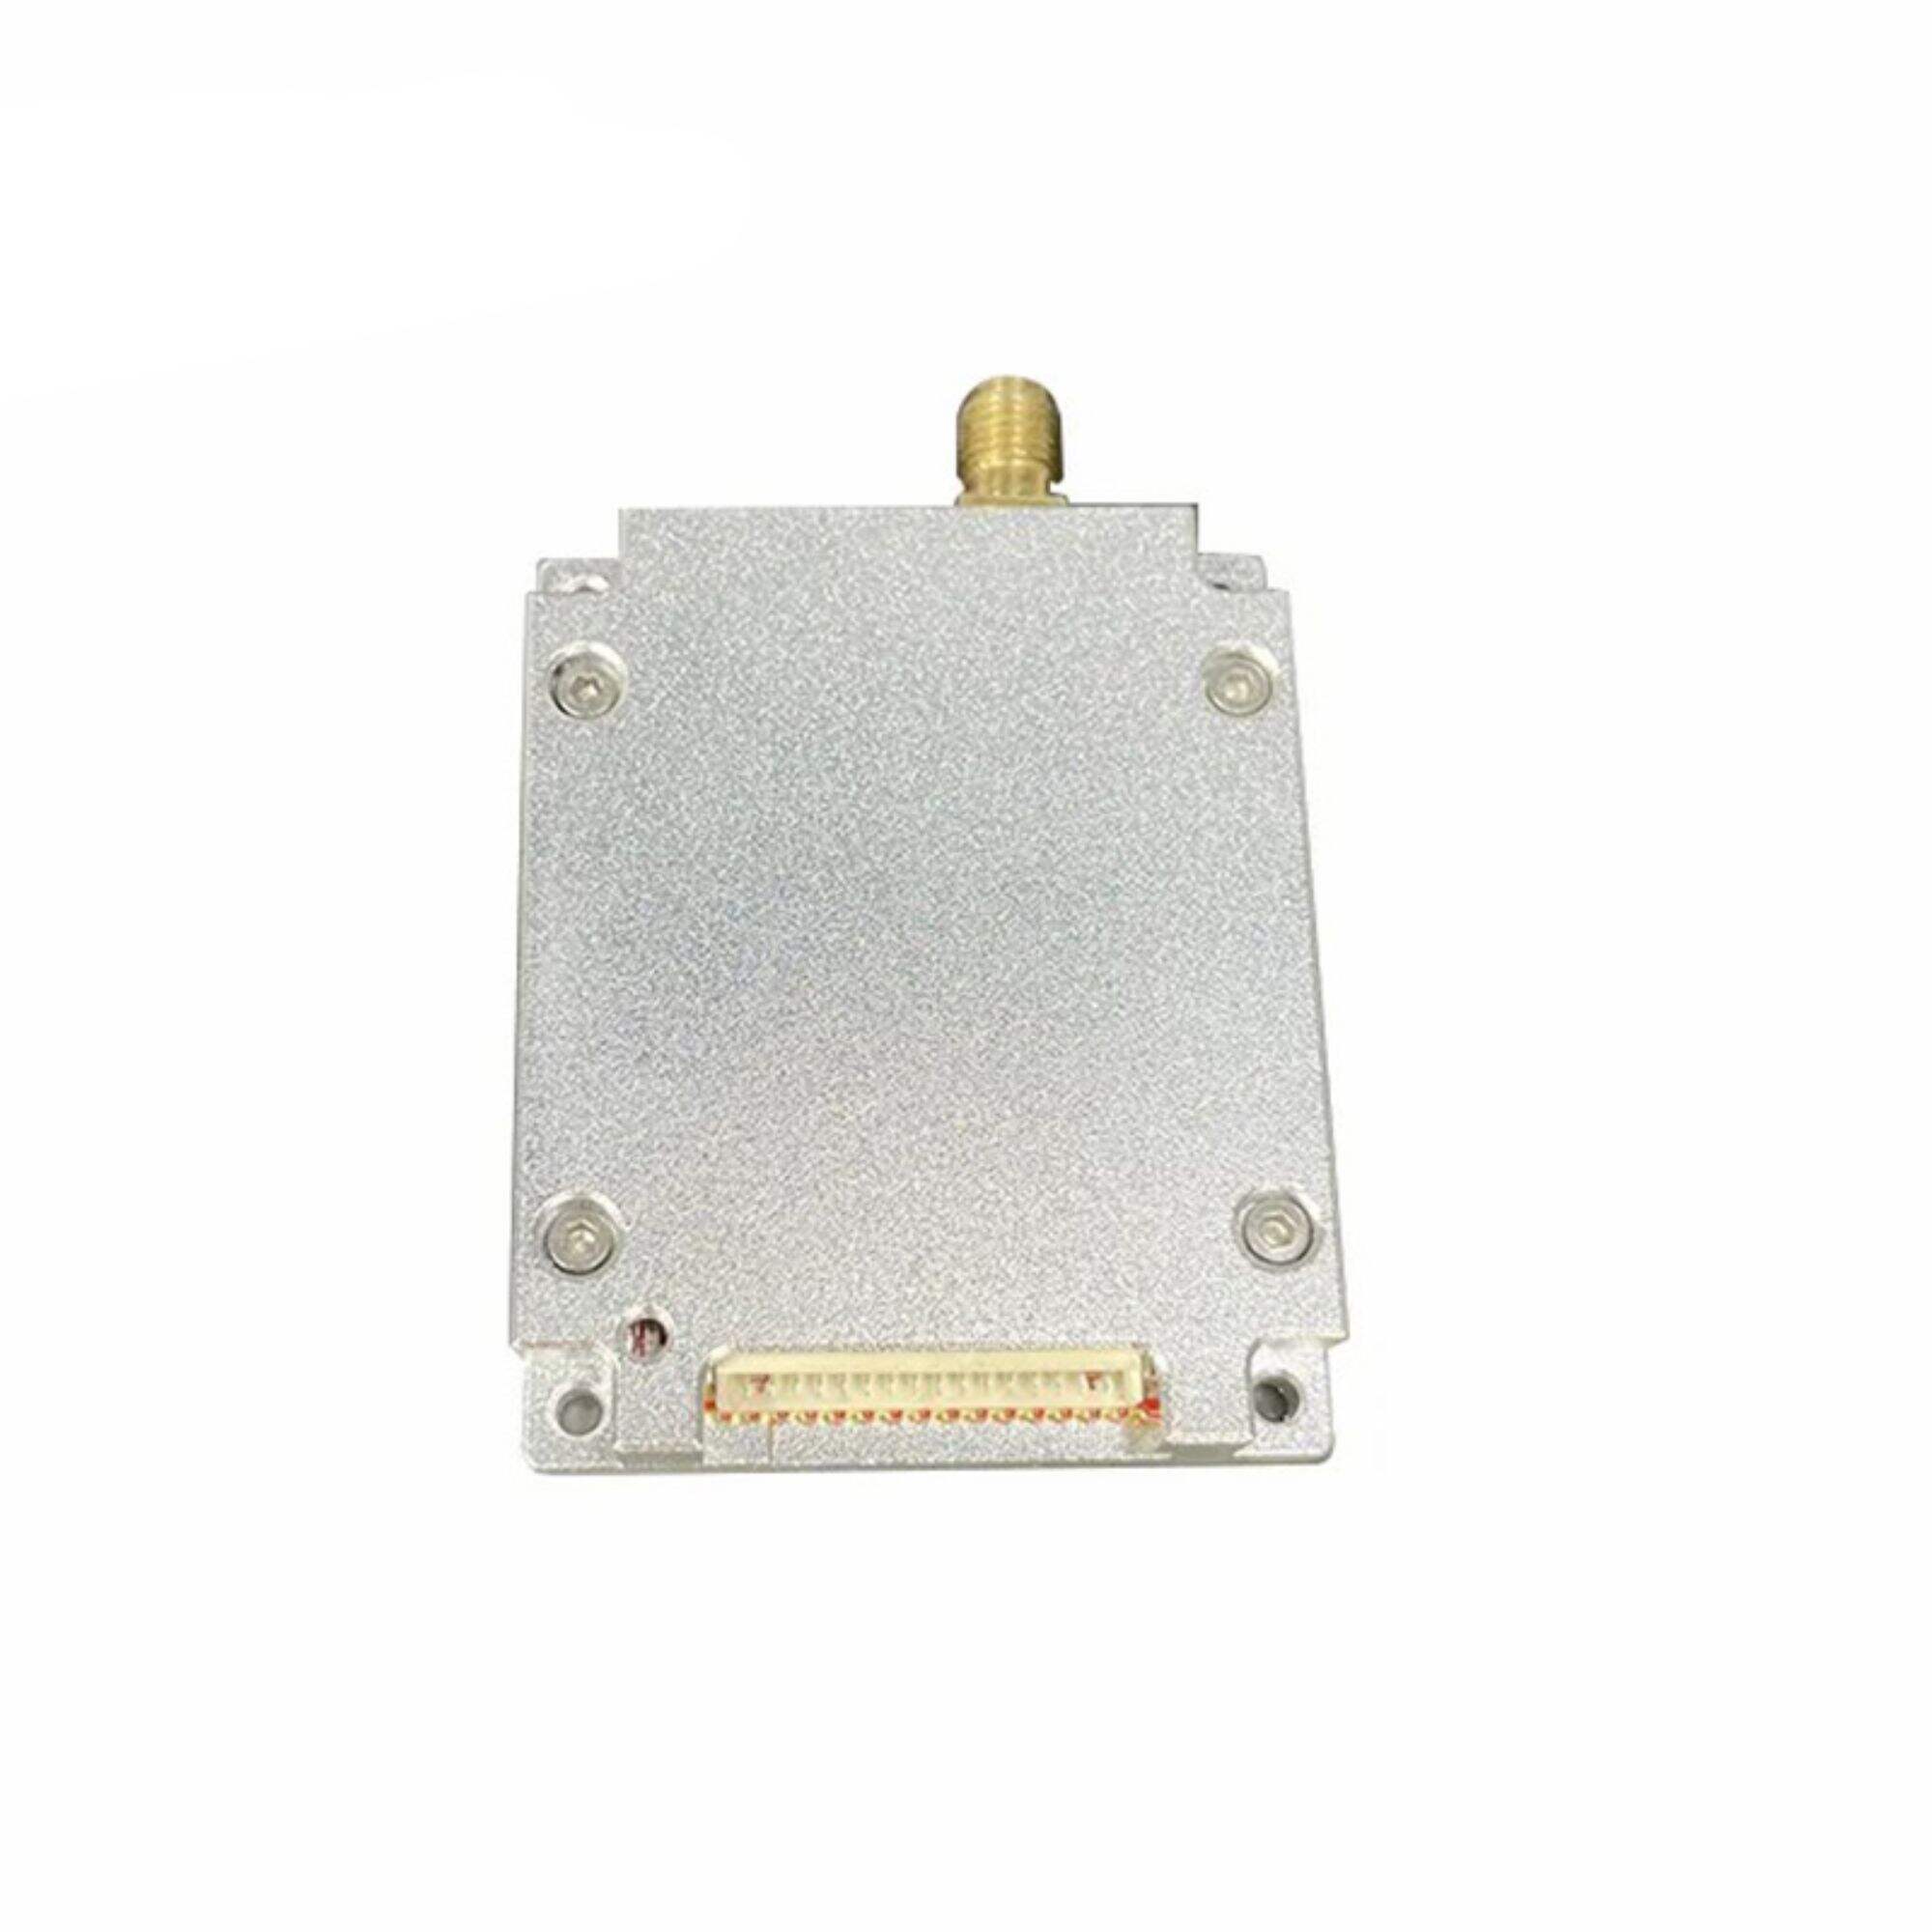 UHF RFID Reader Module